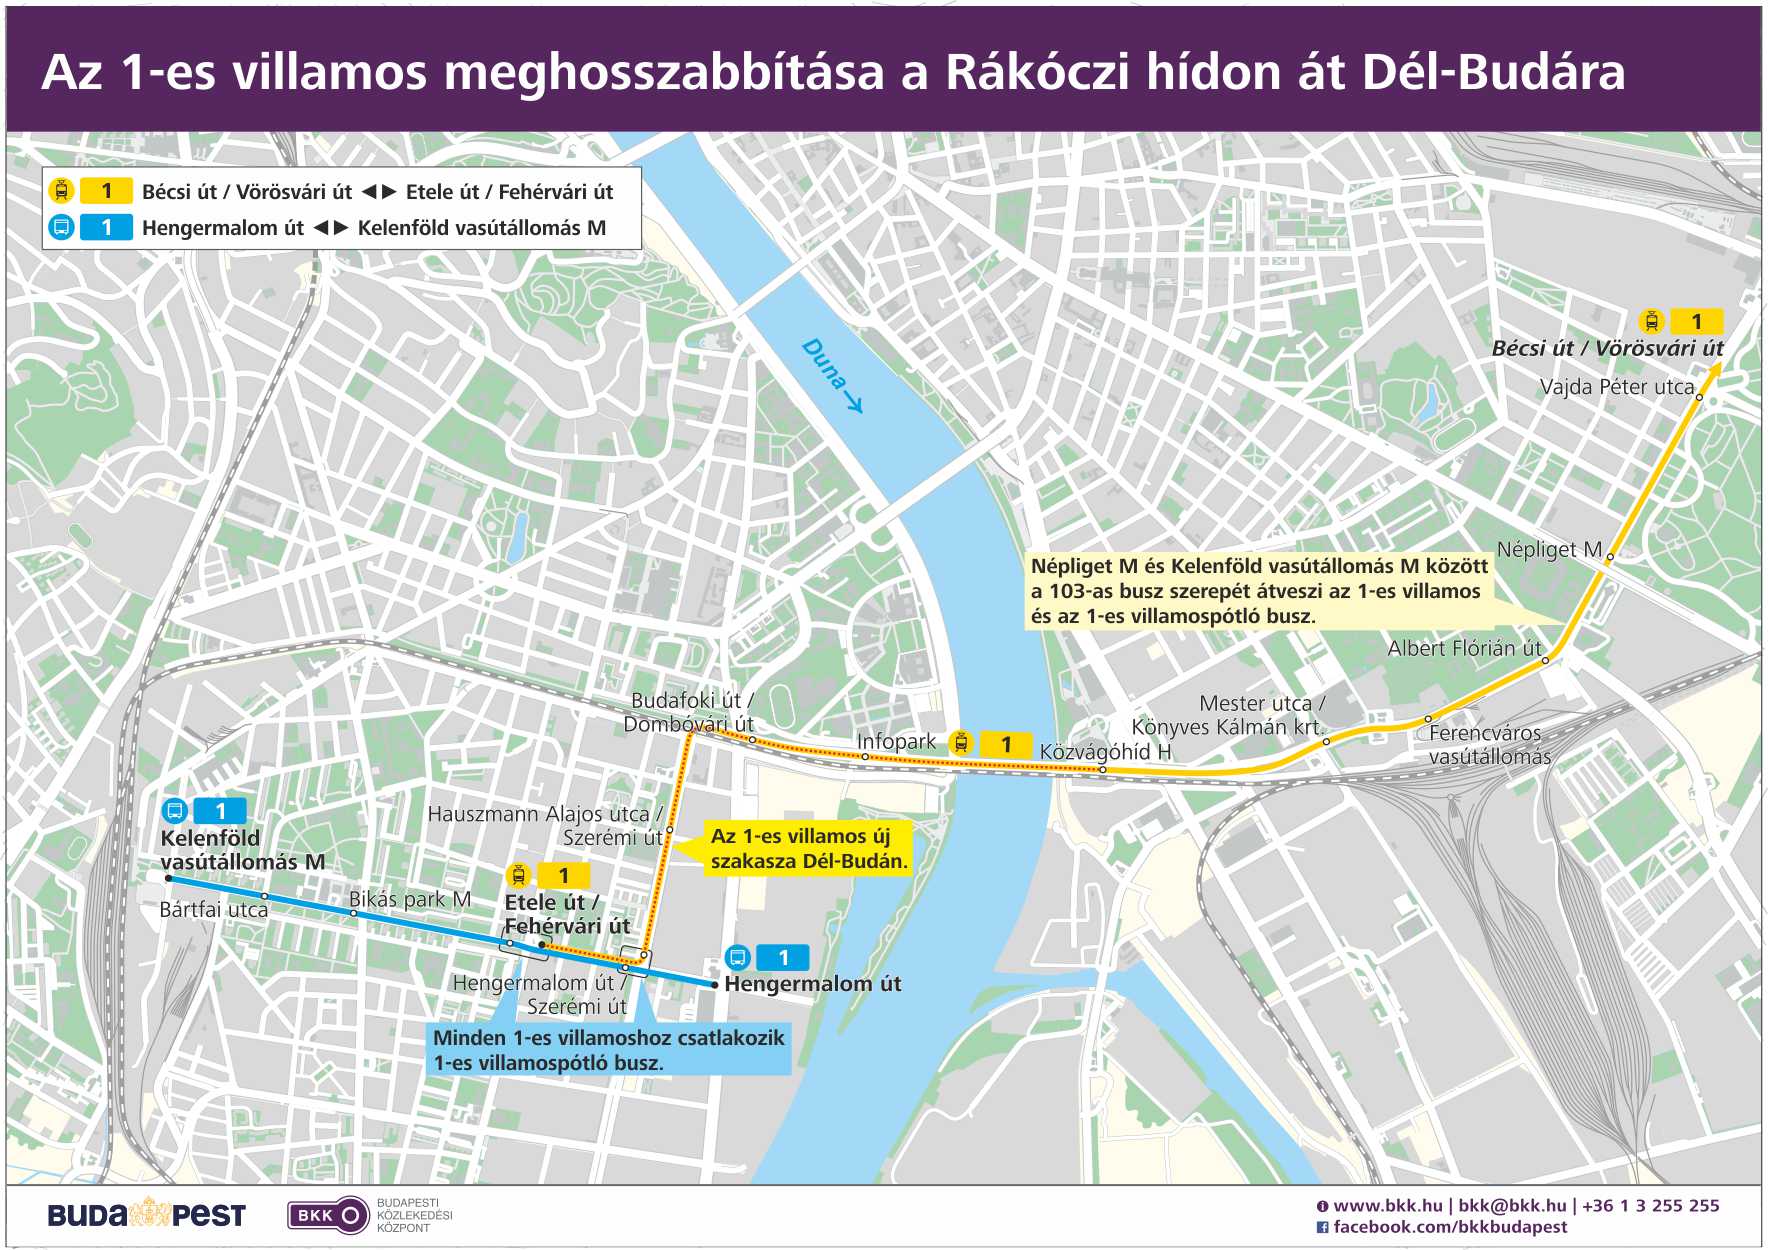 budapest 2 es villamos útvonala térkép Társadalami egyeztetés (1 es villamos)   Budapesti Közlekedési  budapest 2 es villamos útvonala térkép